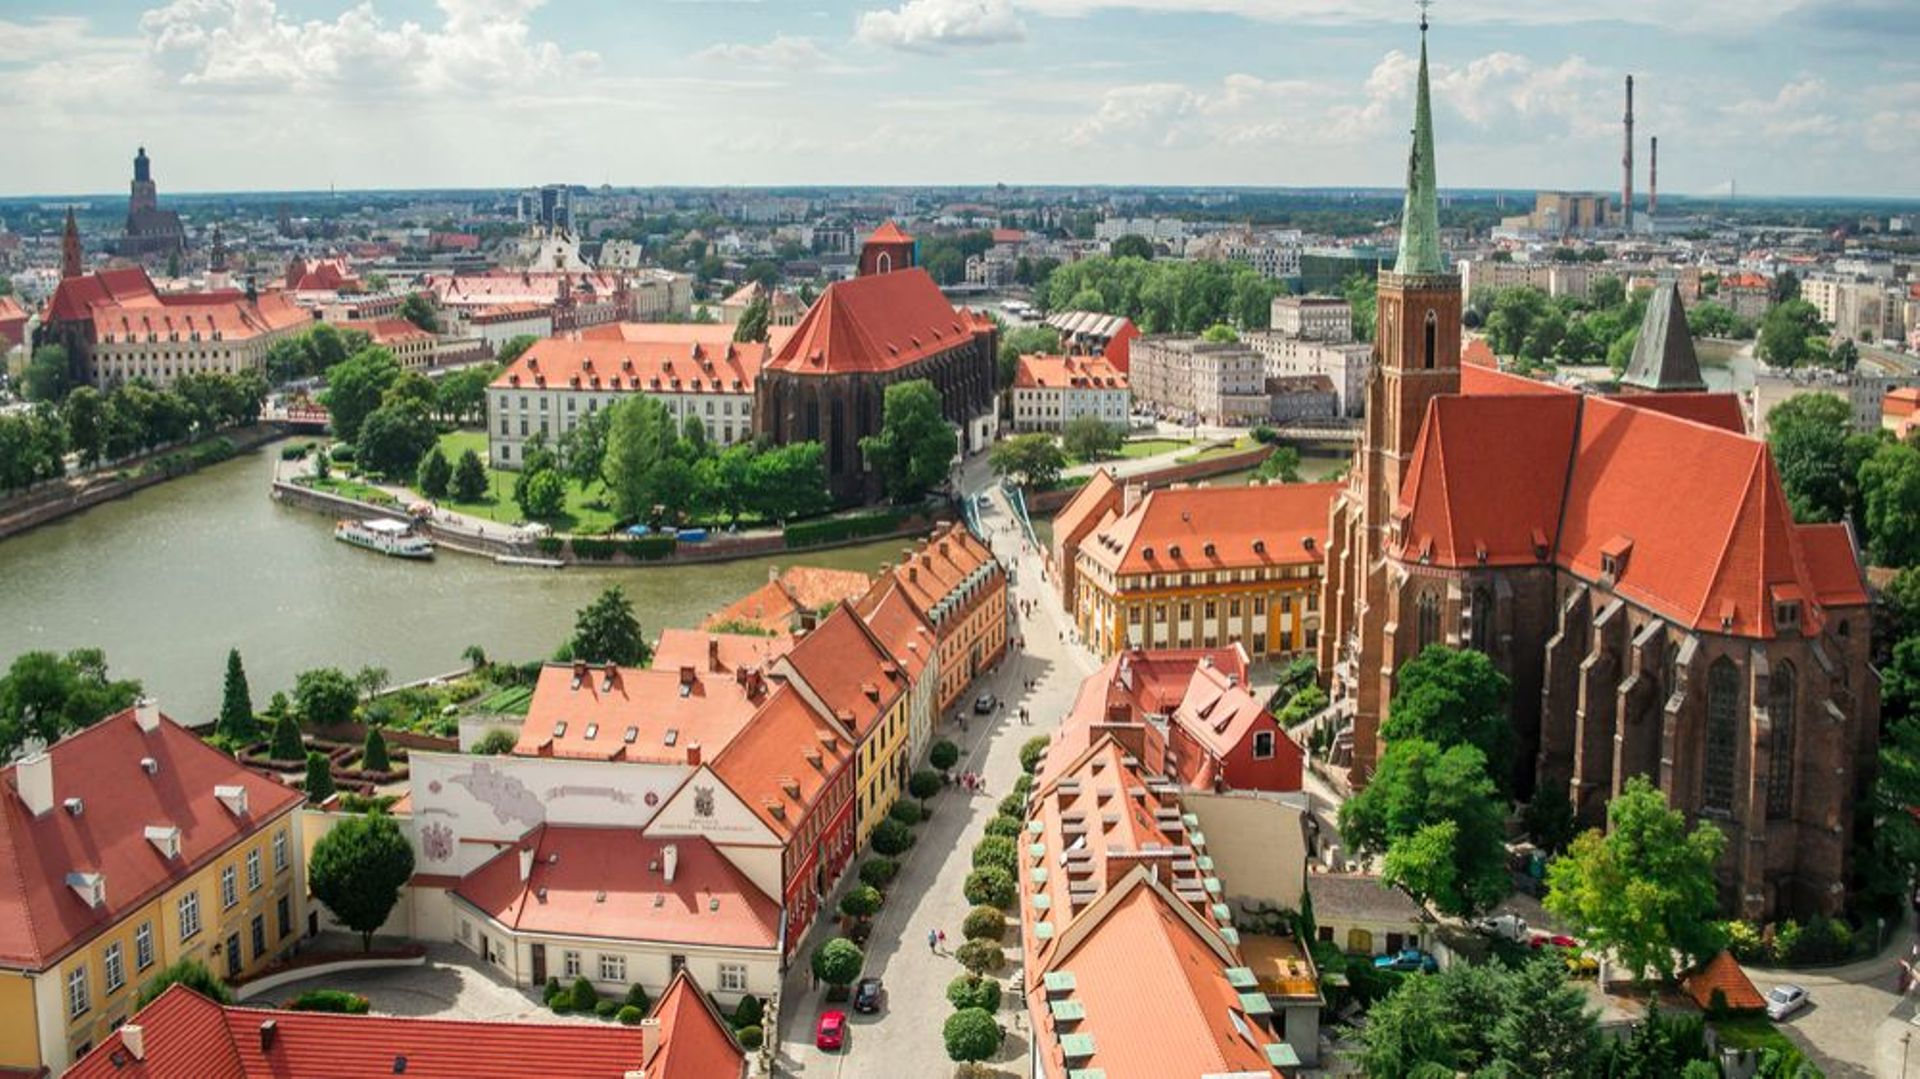 Wroclaw est une cité polonaise construite sur les bras de l'Odra, un fleuve européen qui prend sa source en République tchèque.